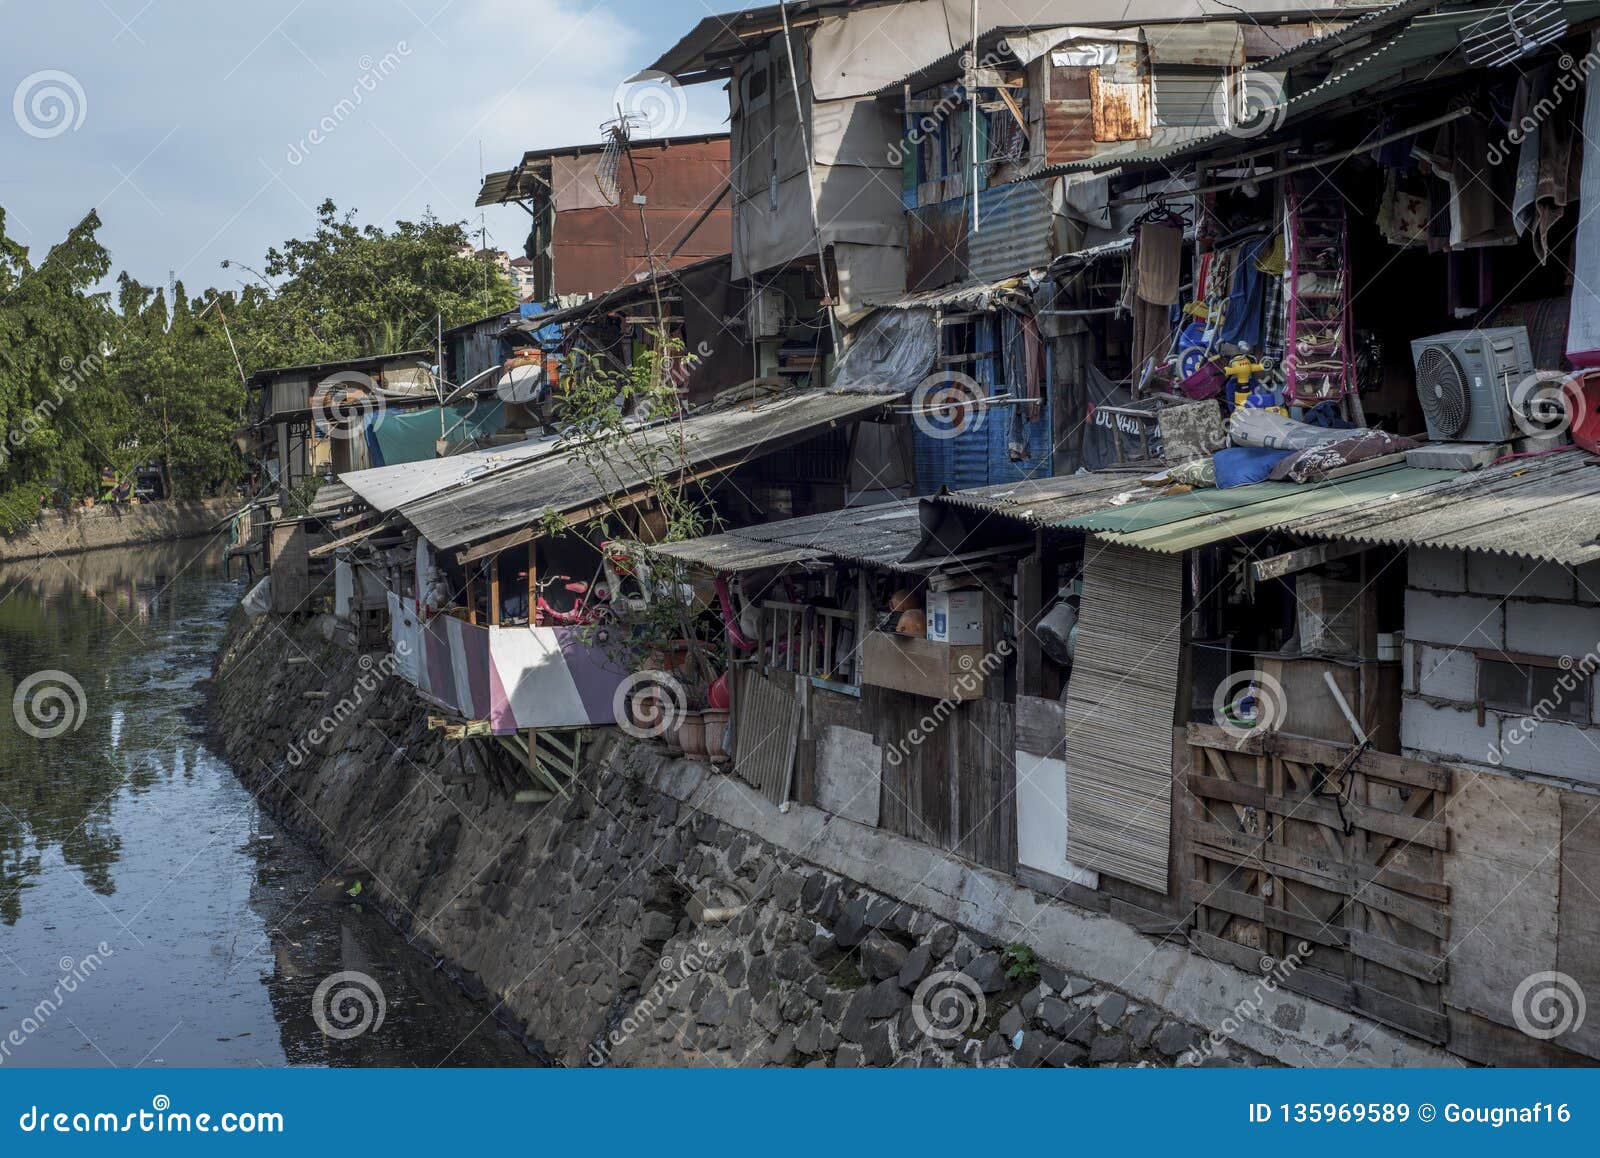 Jakarta Indonesia Slums